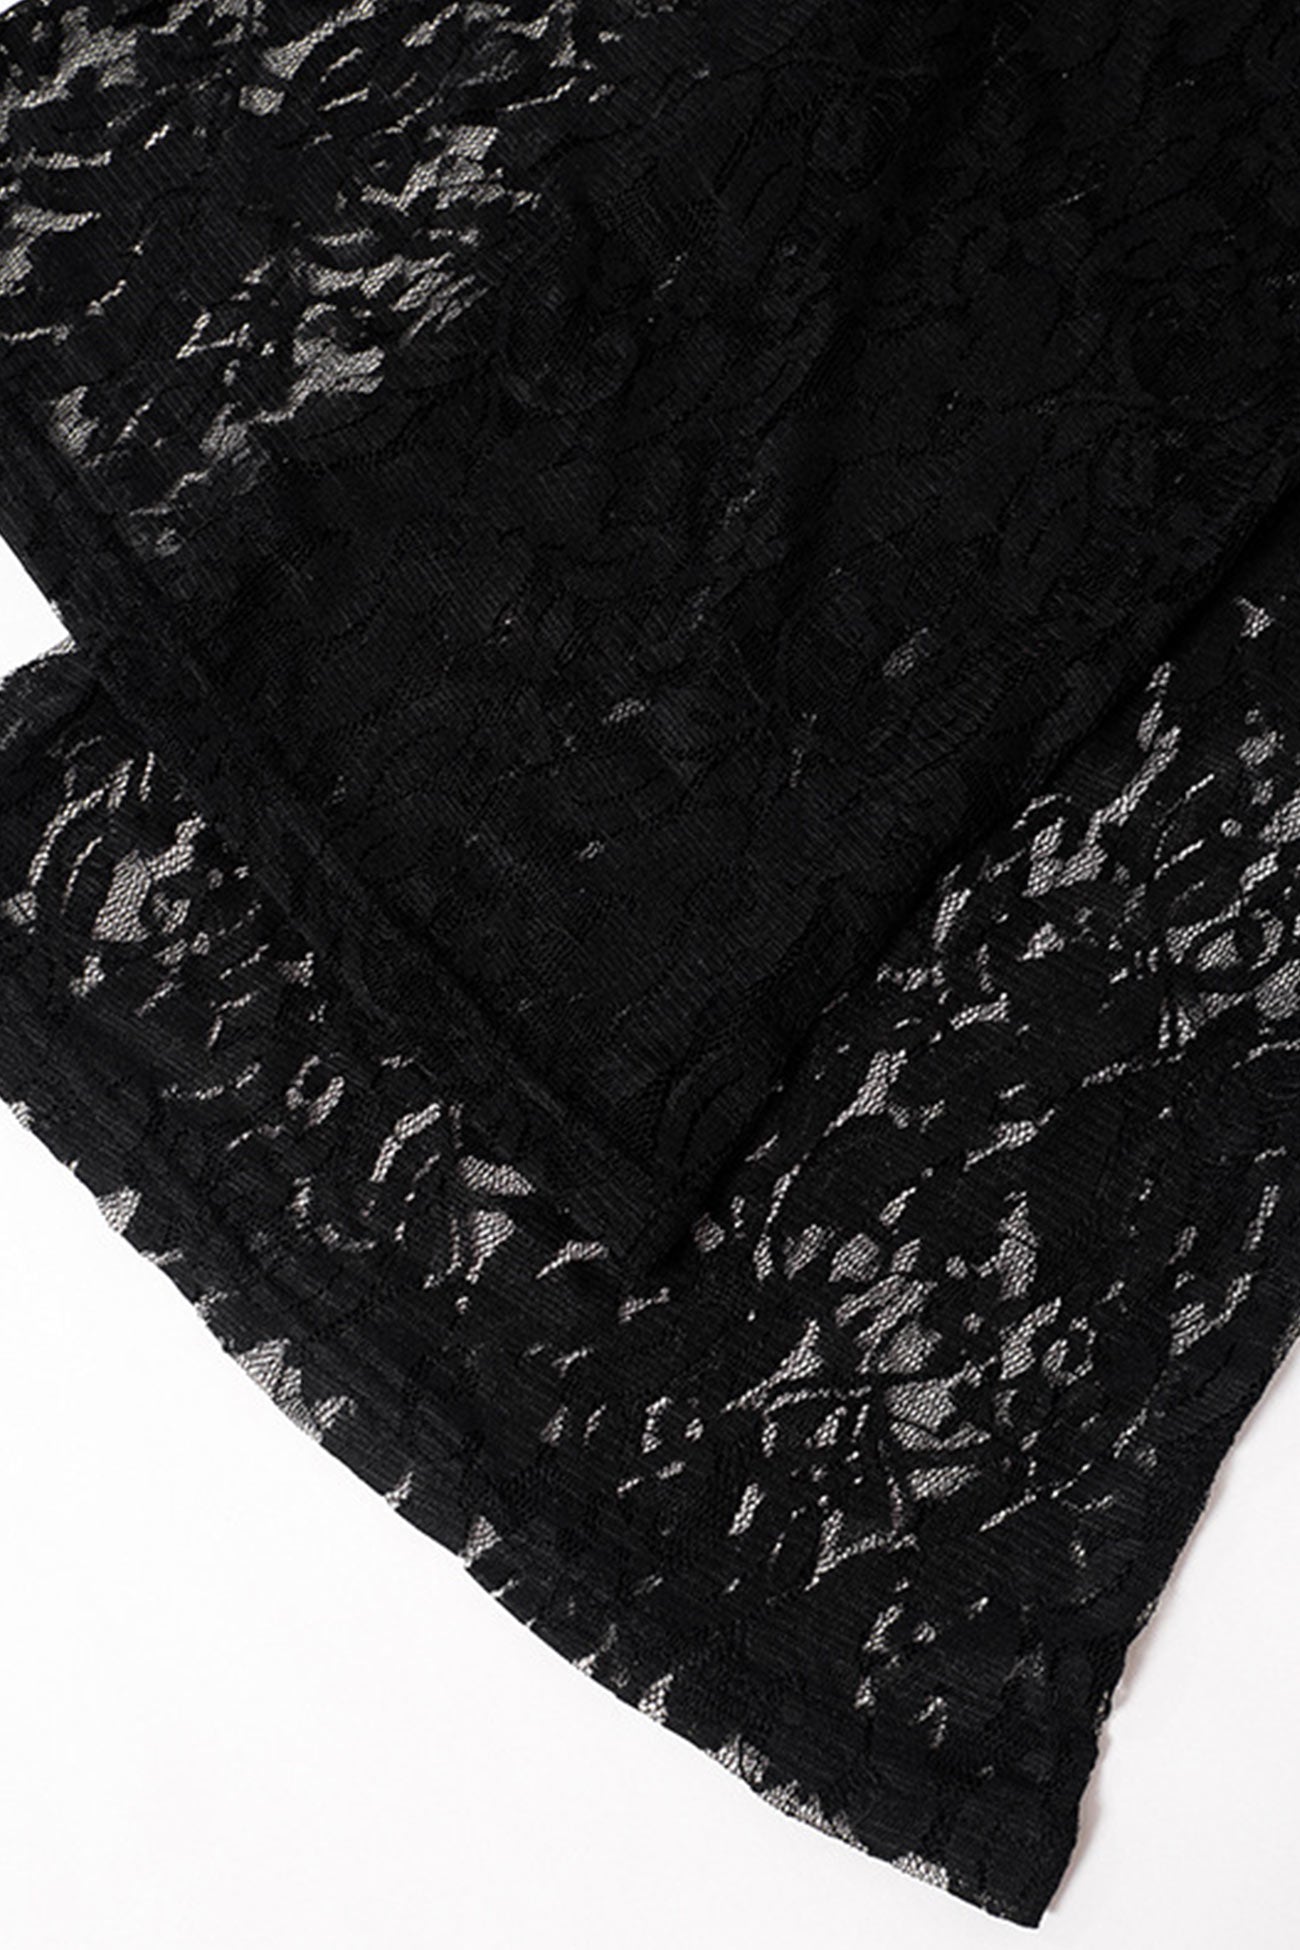 Adorable Embrace Black Lace Long Sleeve Bodysuit